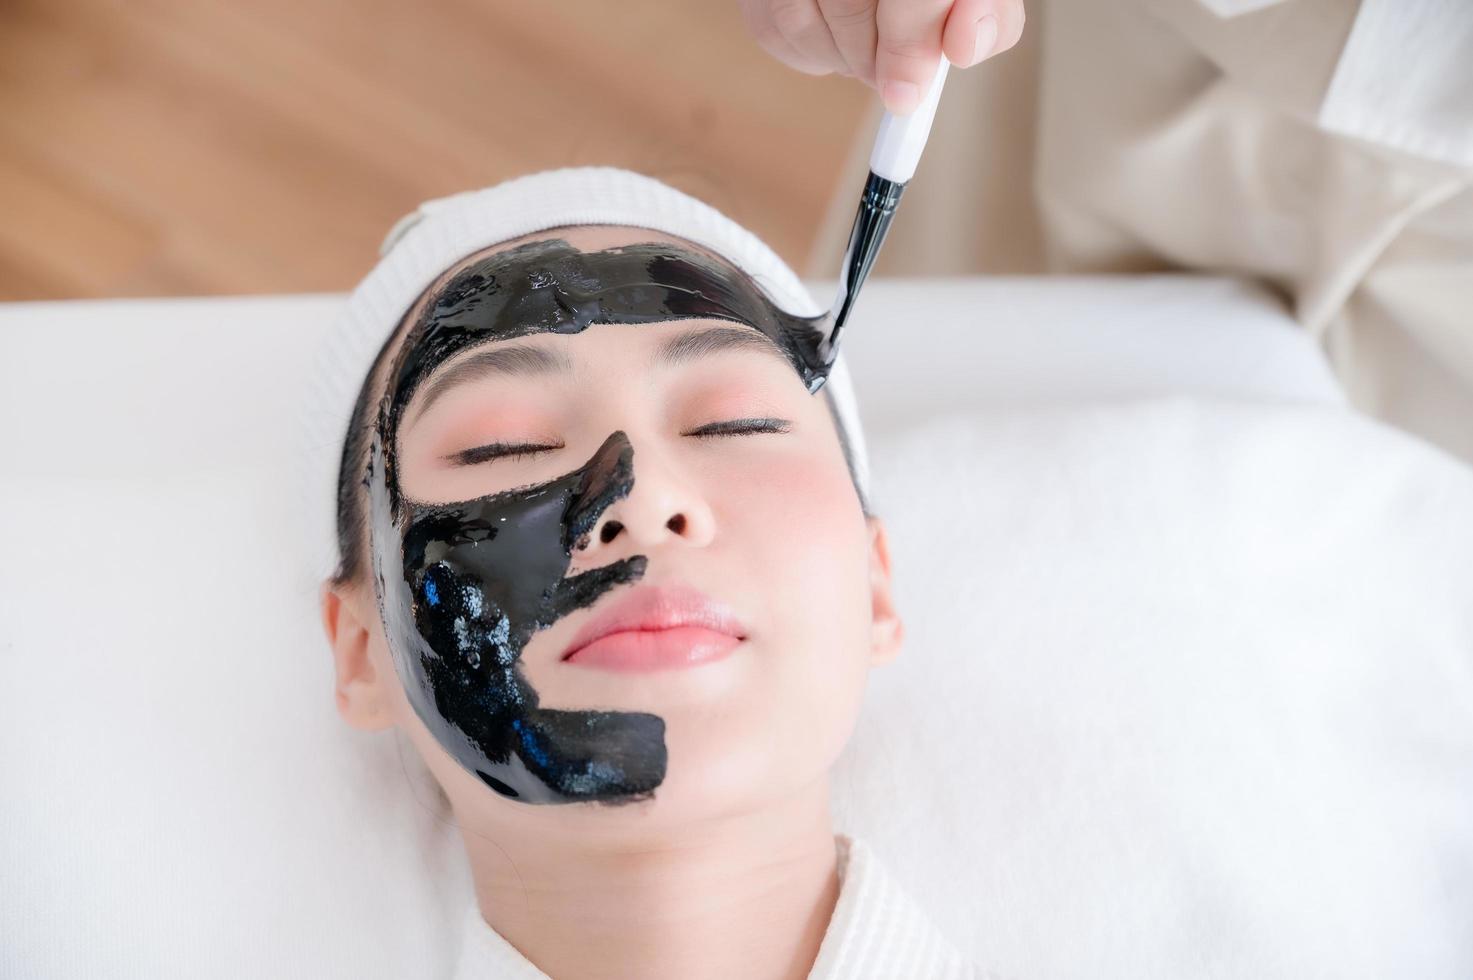 le massaggiatrici professioniste nei saloni termali usano spazzole di fango termale per fare trattamenti per il viso alle bellezze asiatiche foto